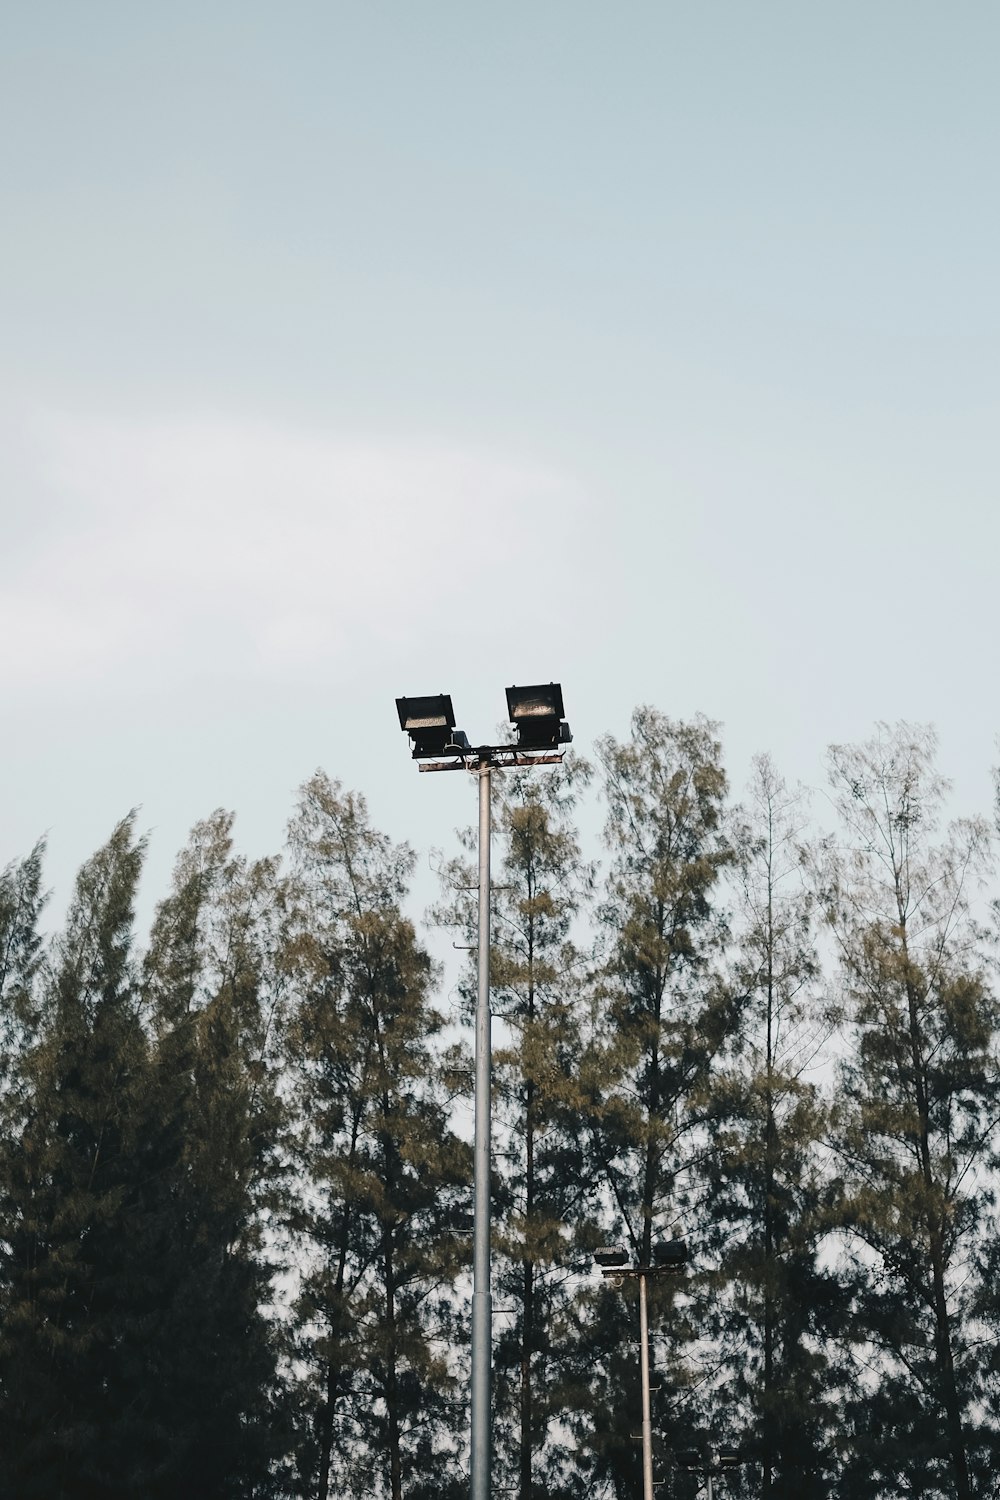 Photographie en contre-plongée d’un lampadaire près d’arbres